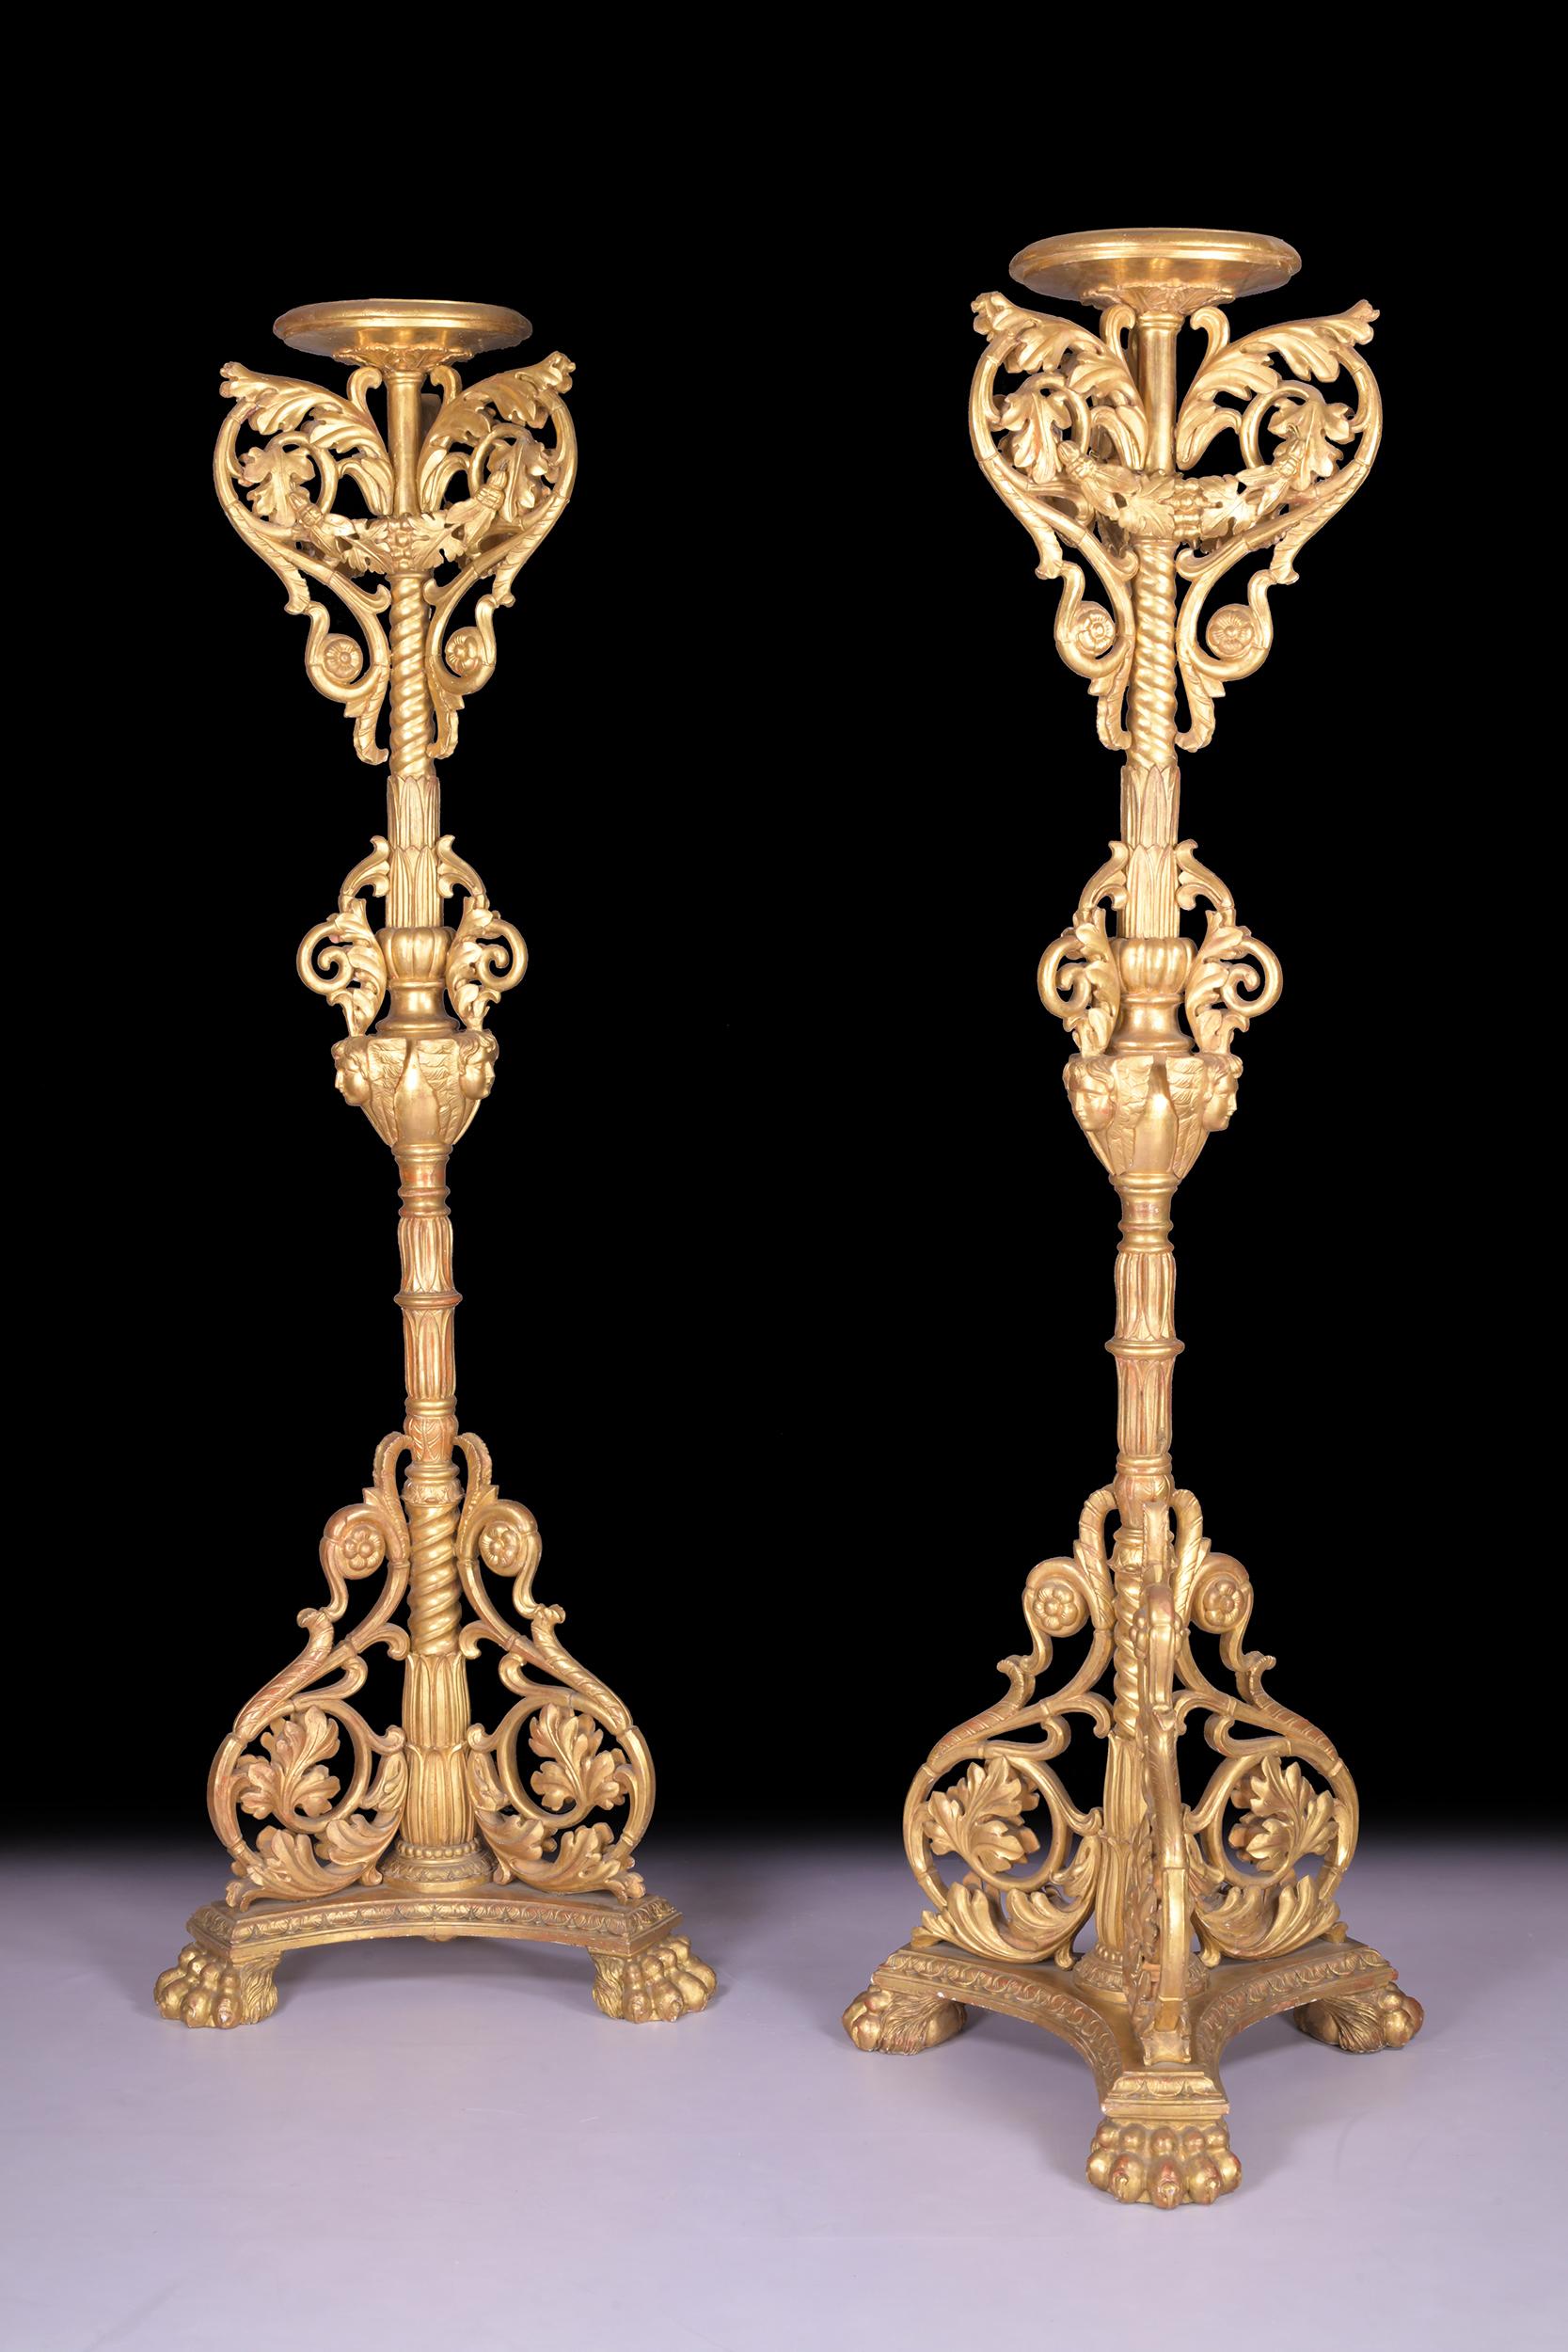 Ein prächtiges, monumentales Paar geschnitzter Fackeln aus vergoldetem Holz im italienischen Barockstil, jeweils bestehend aus einer runden, gewölbten Platte über einer kunstvoll geschnitzten Säule mit Blumenranken und Wasserspeiermasken, die in